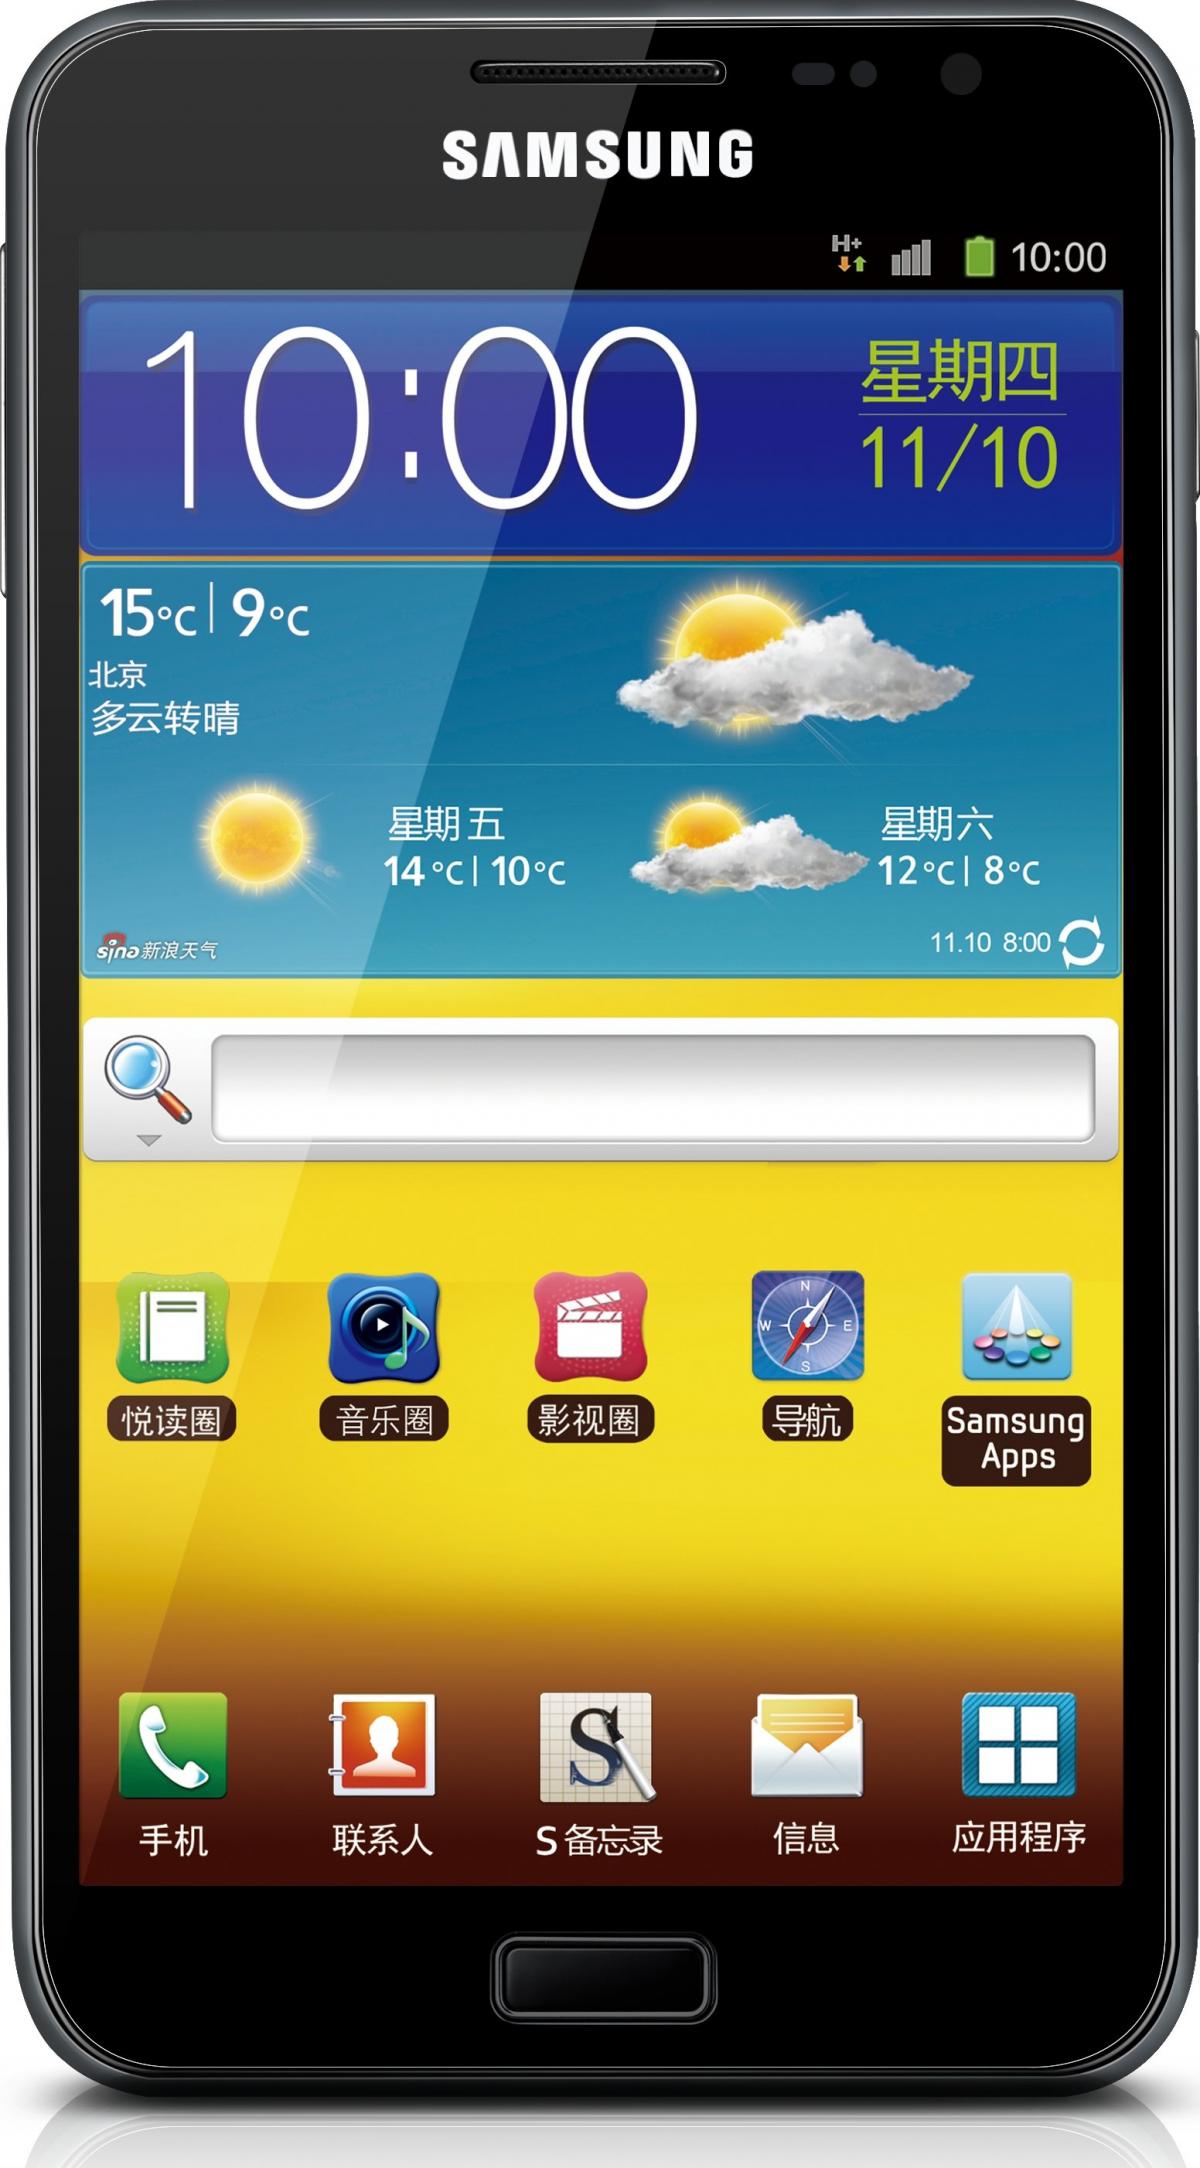 Galaxy Note GT-I9220